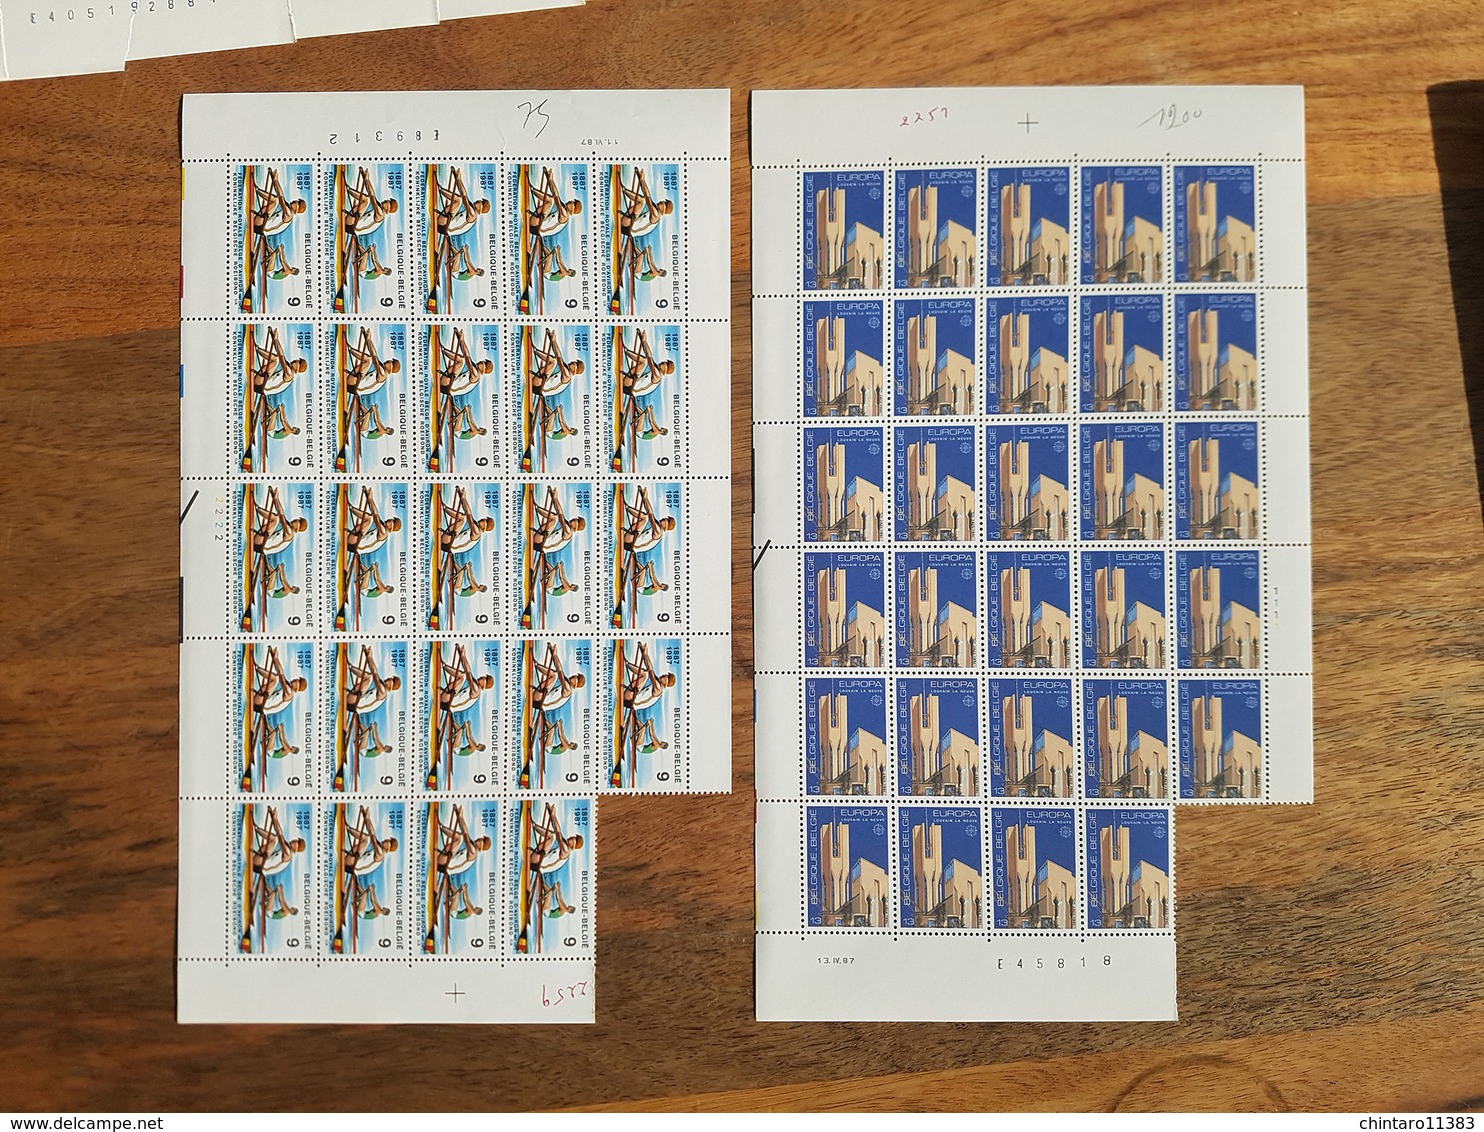 Lot feuilles complètes/incomplètes de timbres Belgique - Année 1987